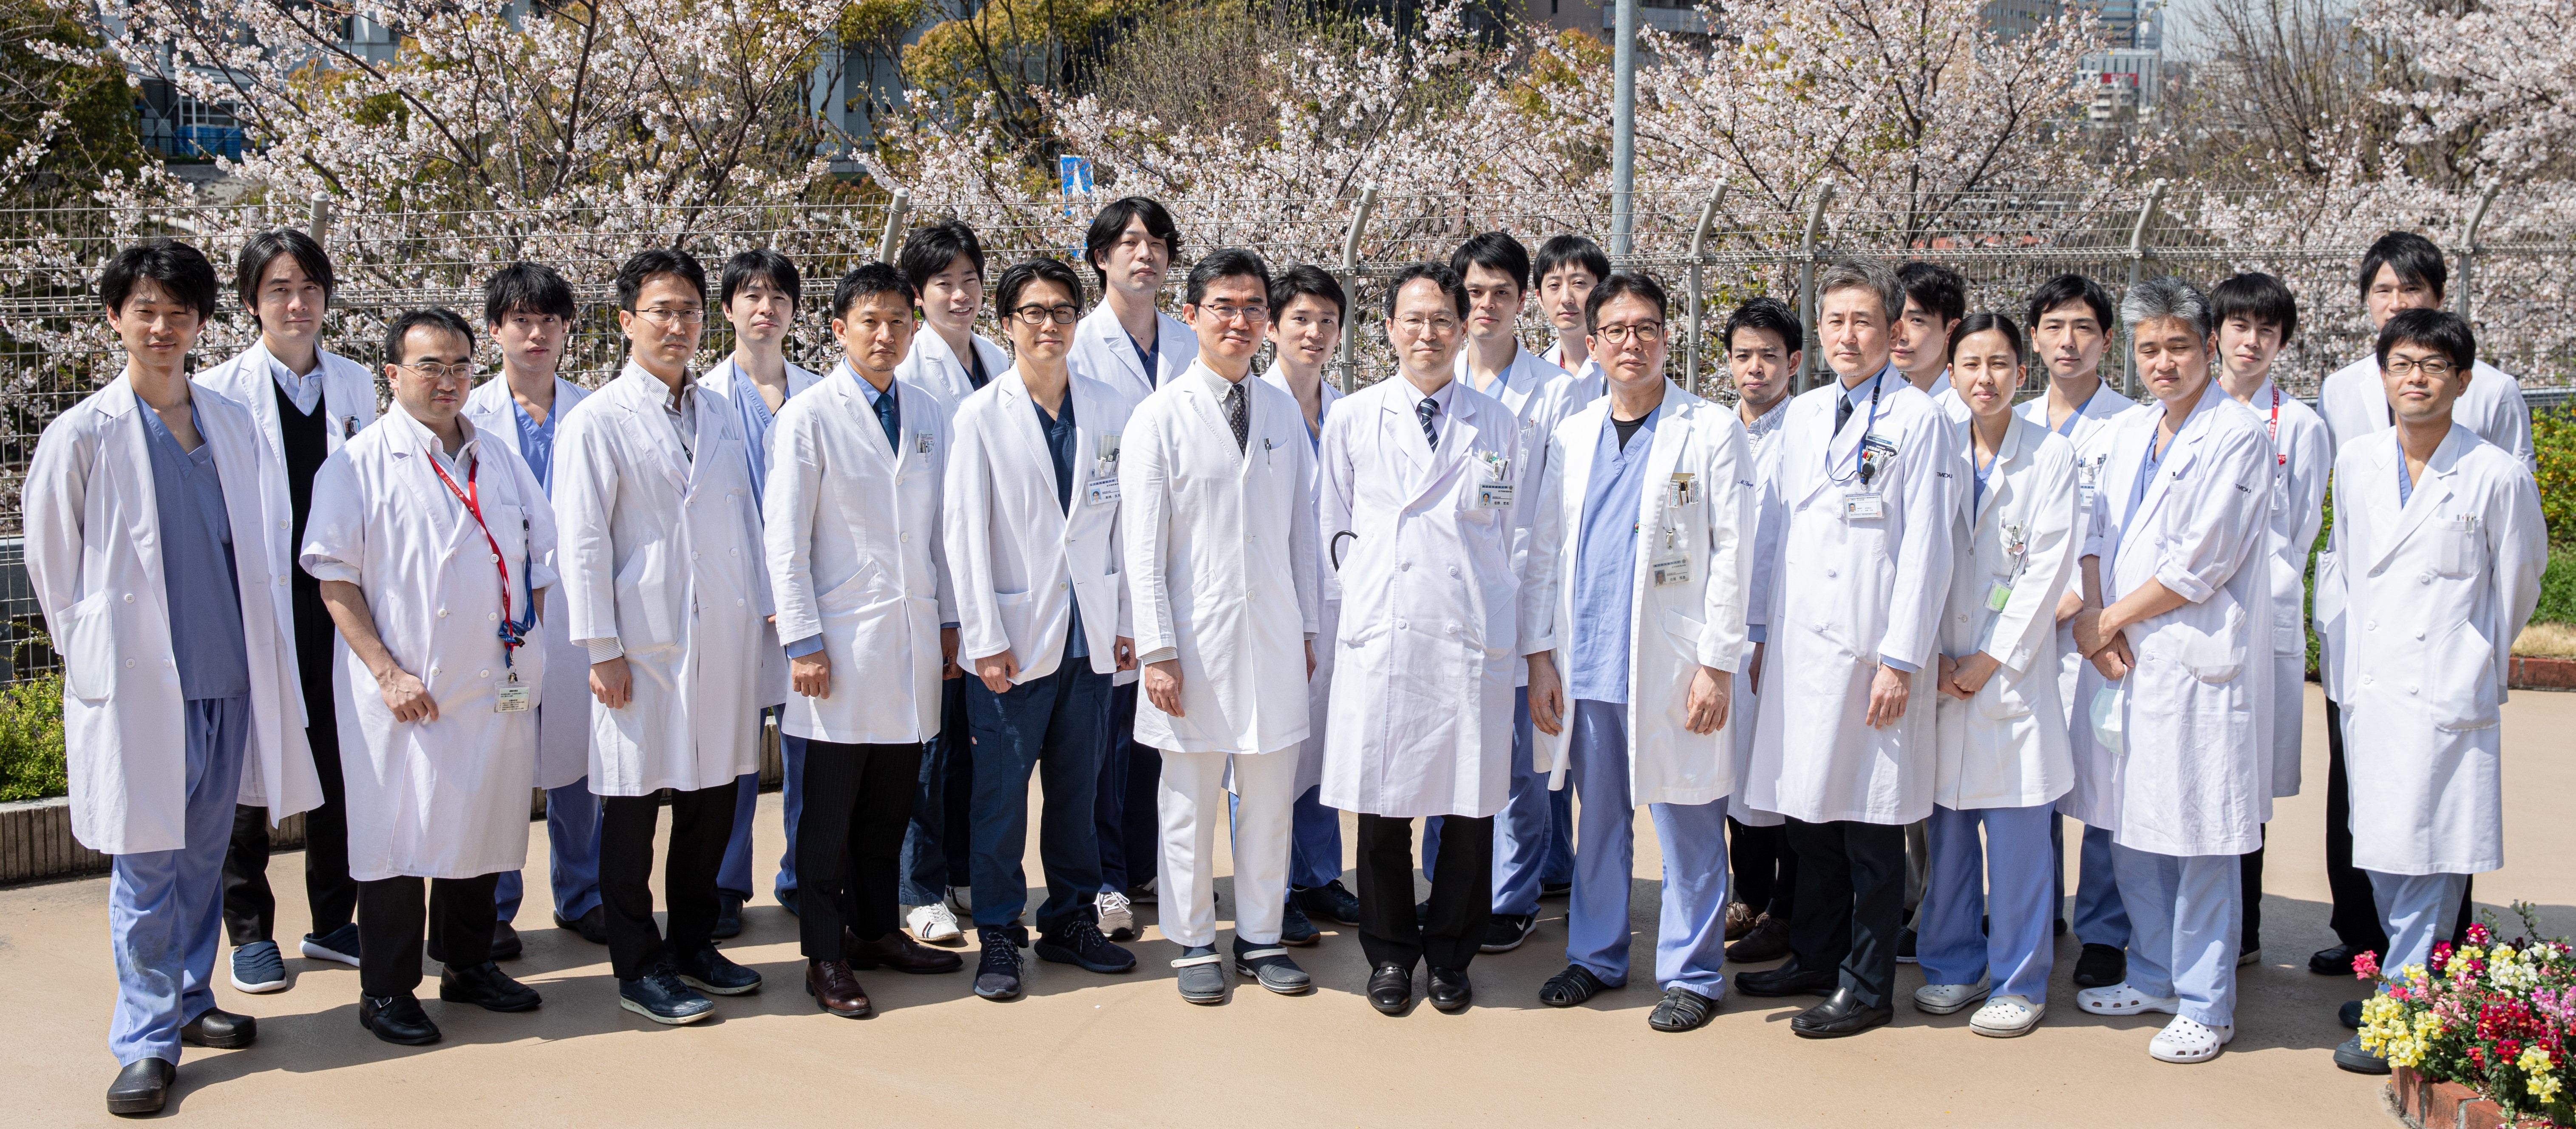 医科 病院 コロナ 東京 歯科 大学 新型コロナウイルスに正面から立ち向かう大学病院に支援を （東京医科歯科大学）